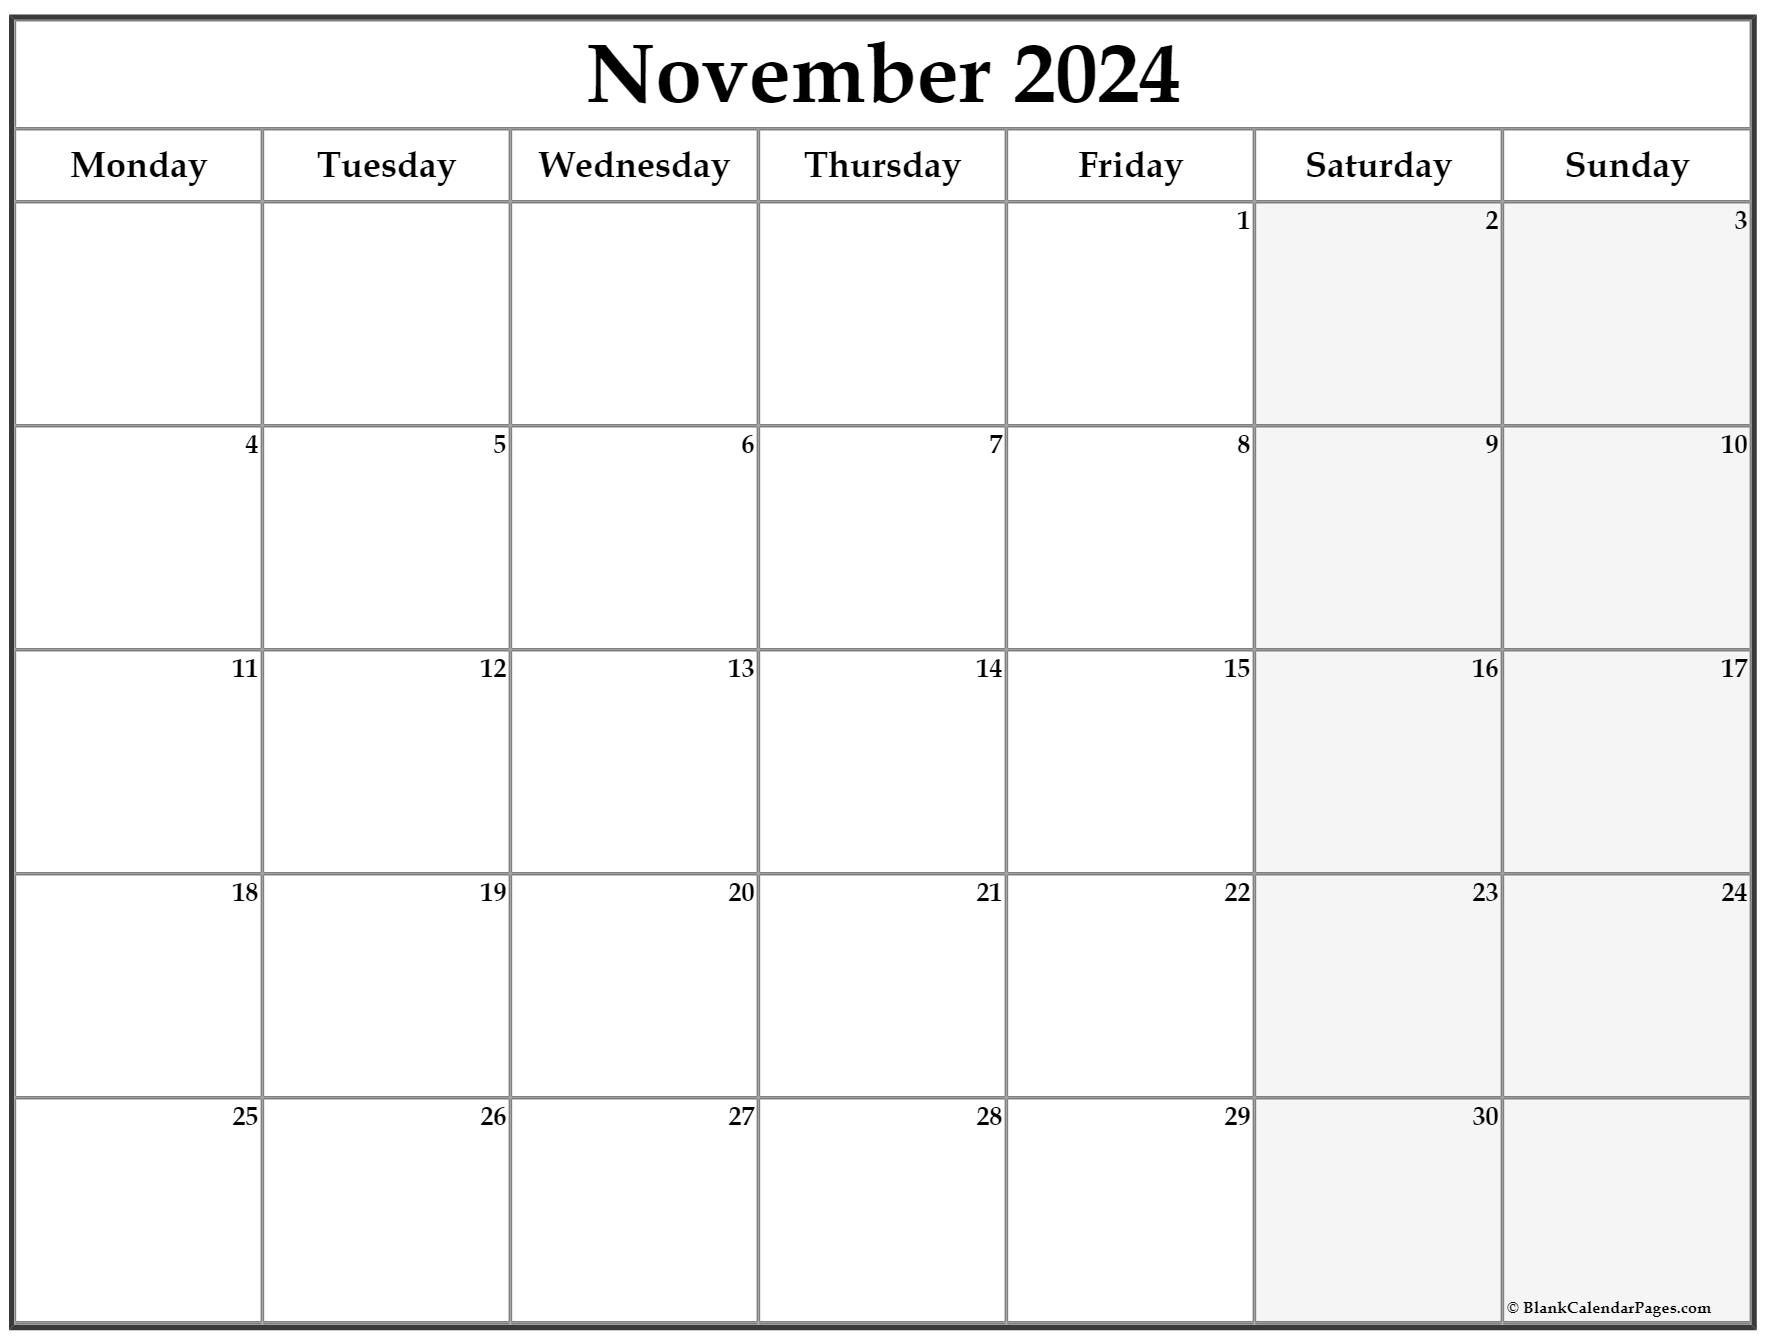 November 2020 Monday Calendar